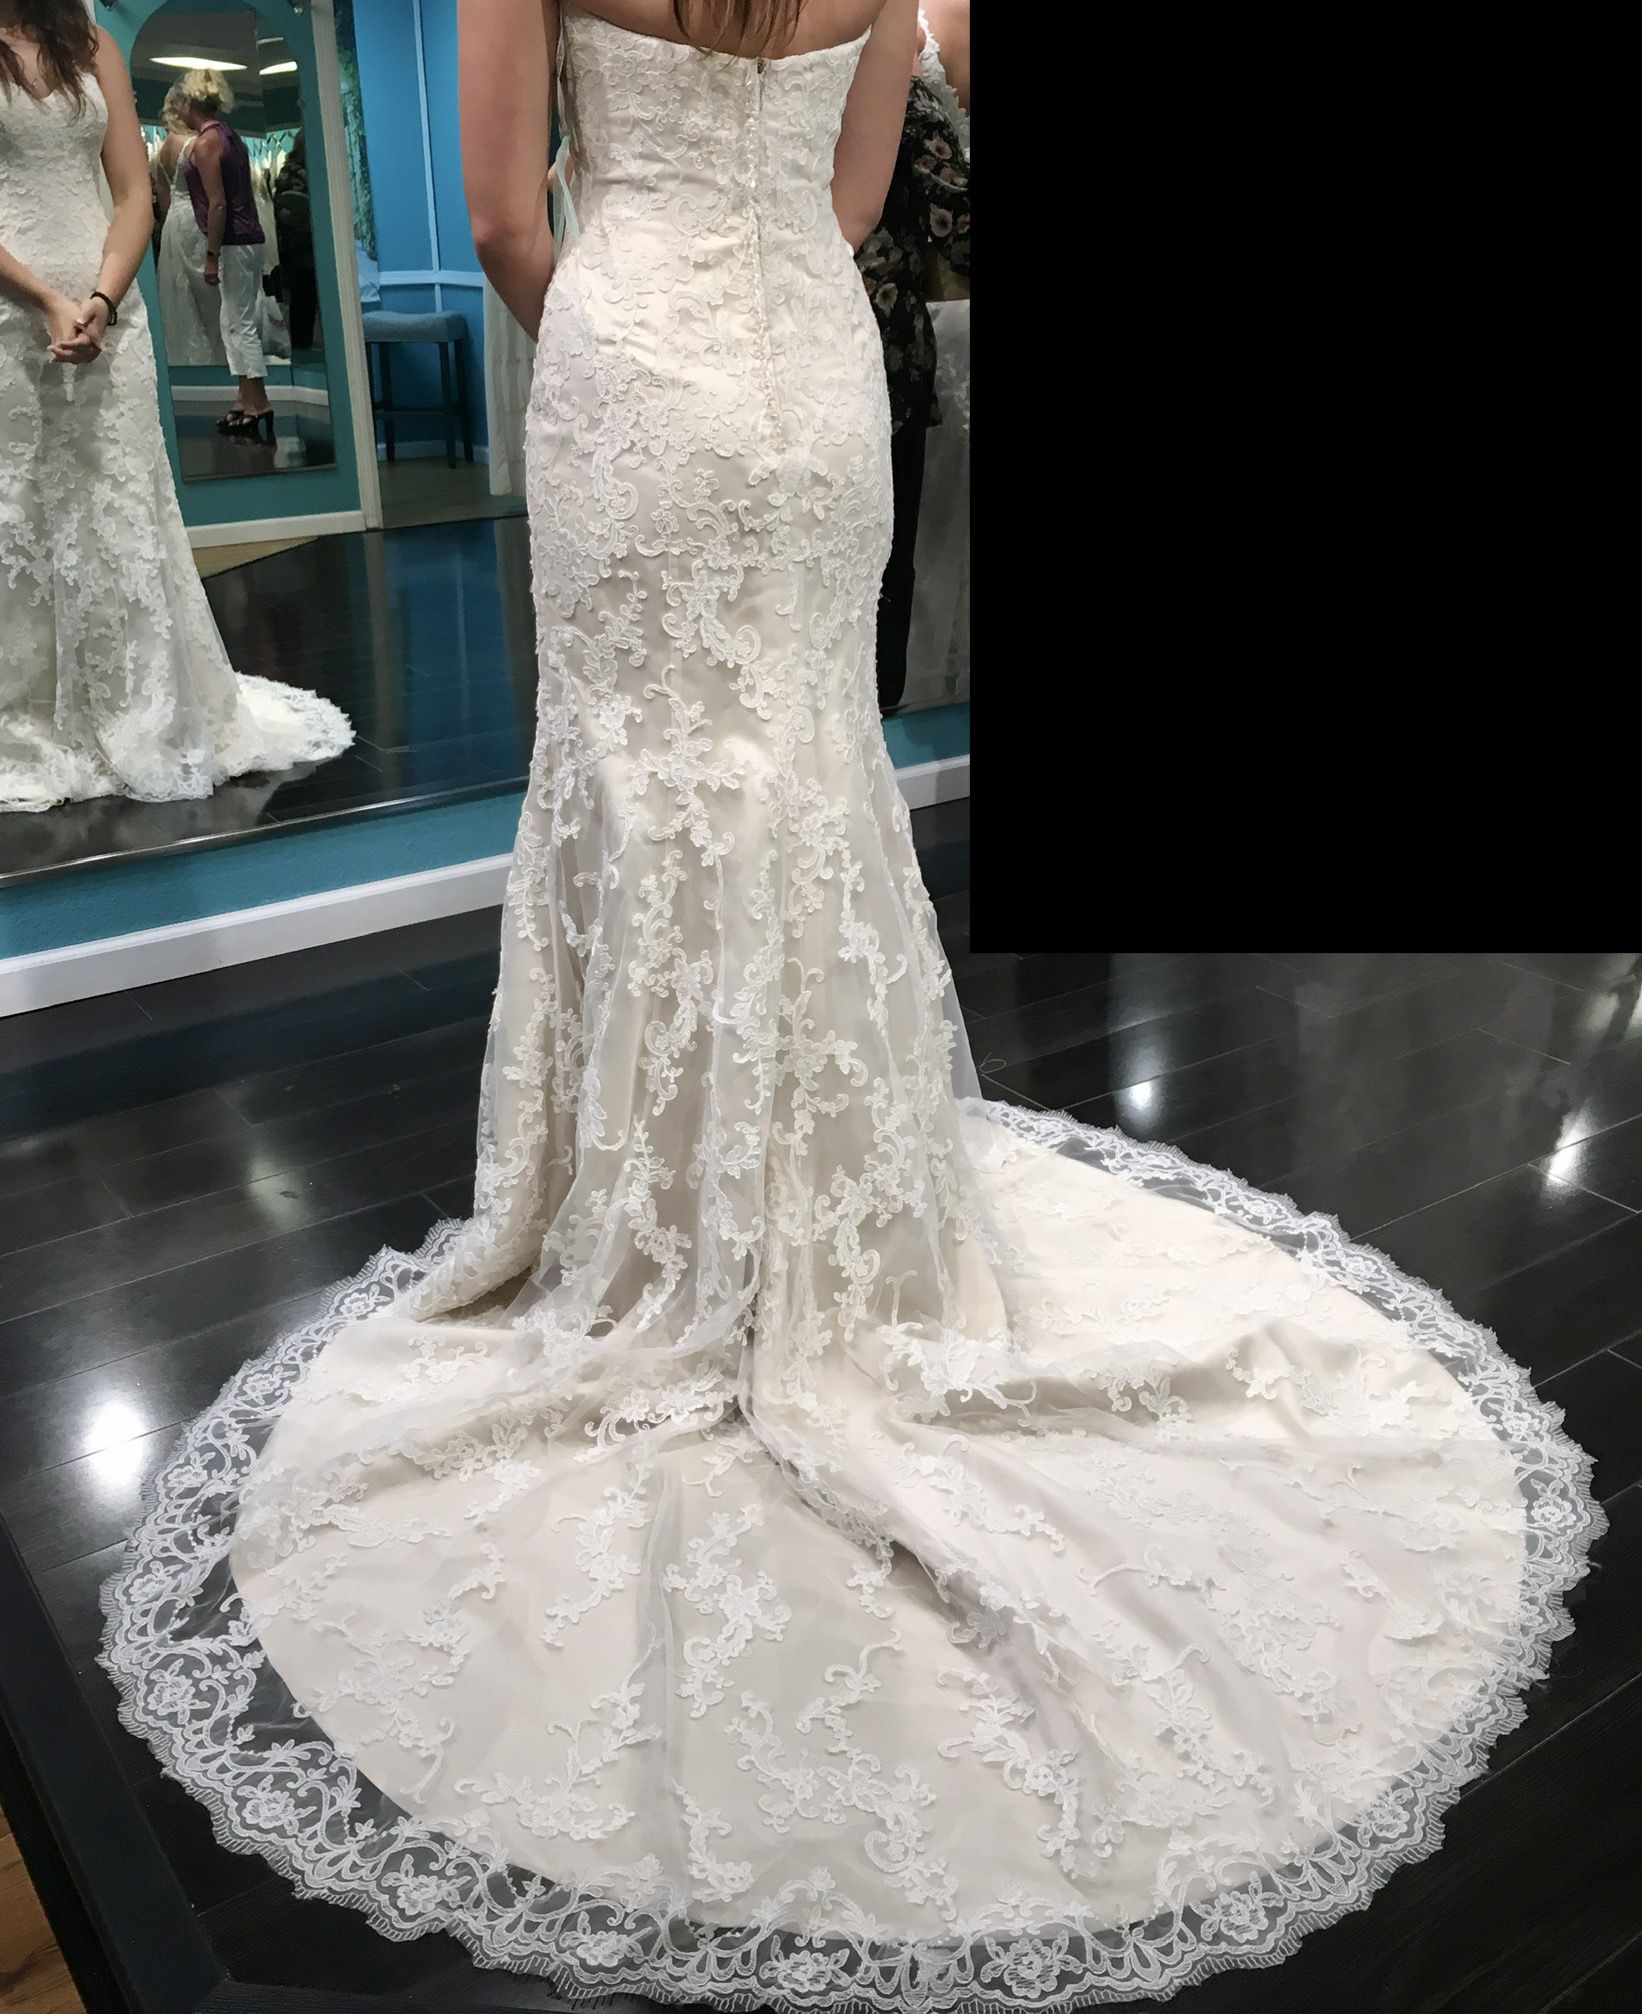 Stunning Wedding Gown 